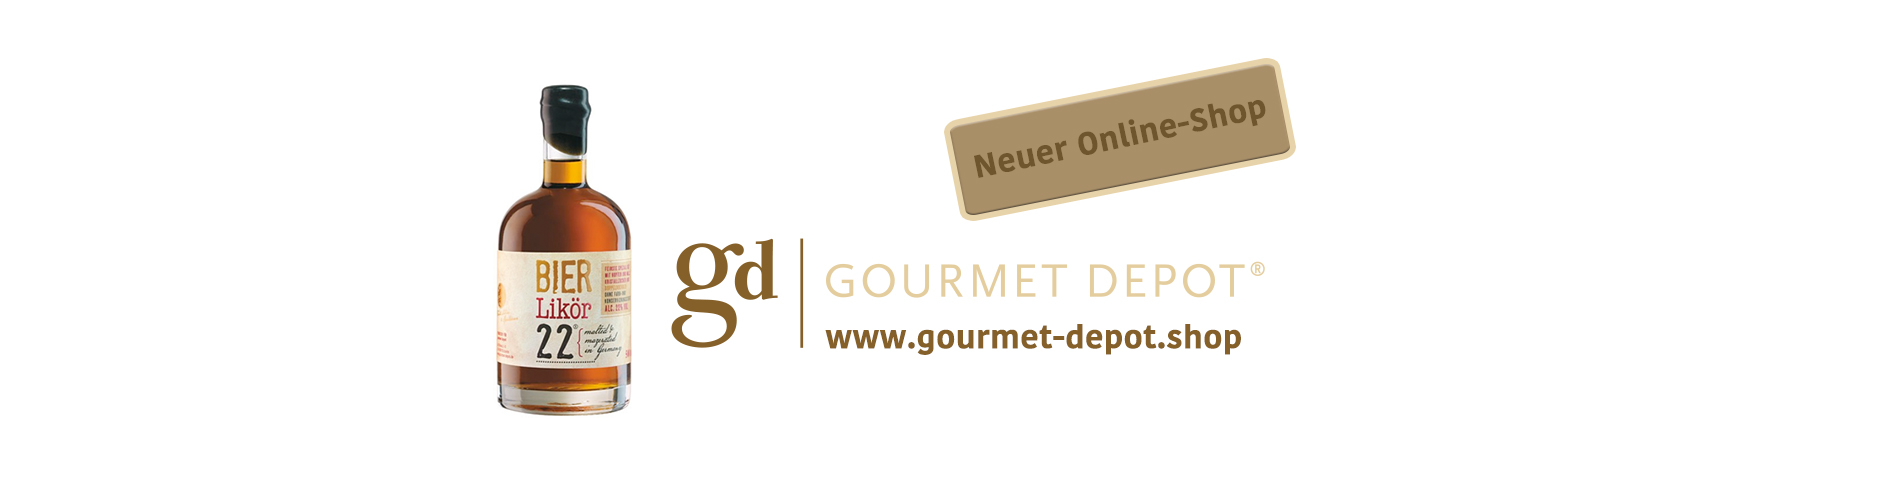 TAXolution Marketing erstellt neuen Online-Shop für gourmet depot